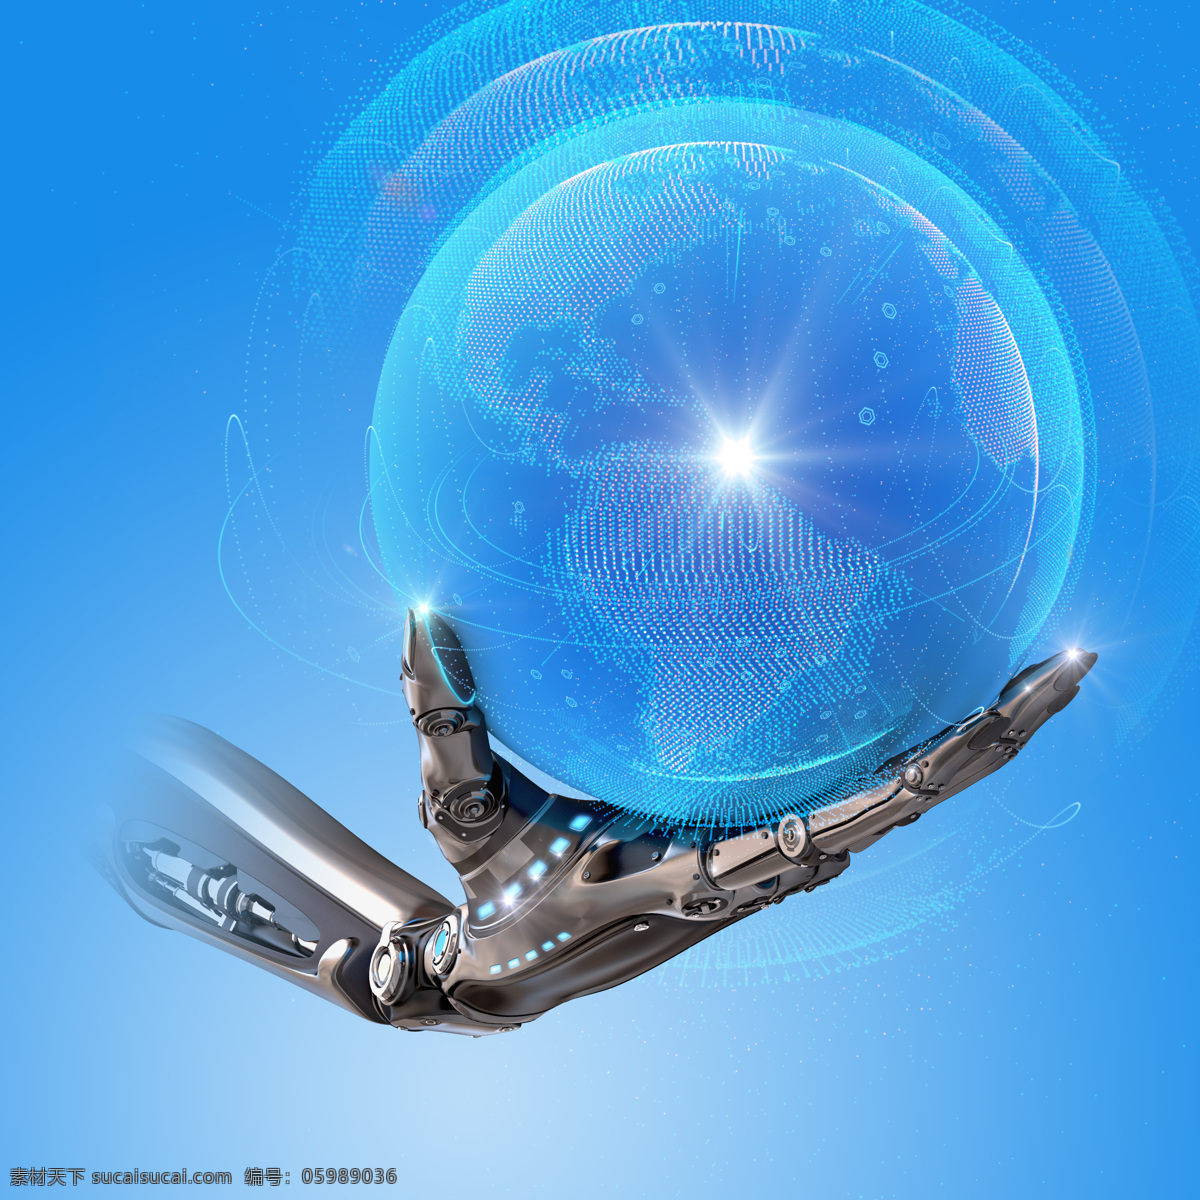 蓝色 球 机器 人手 手 地球 机器人 科技 电子 科学 其他人物 人物图片